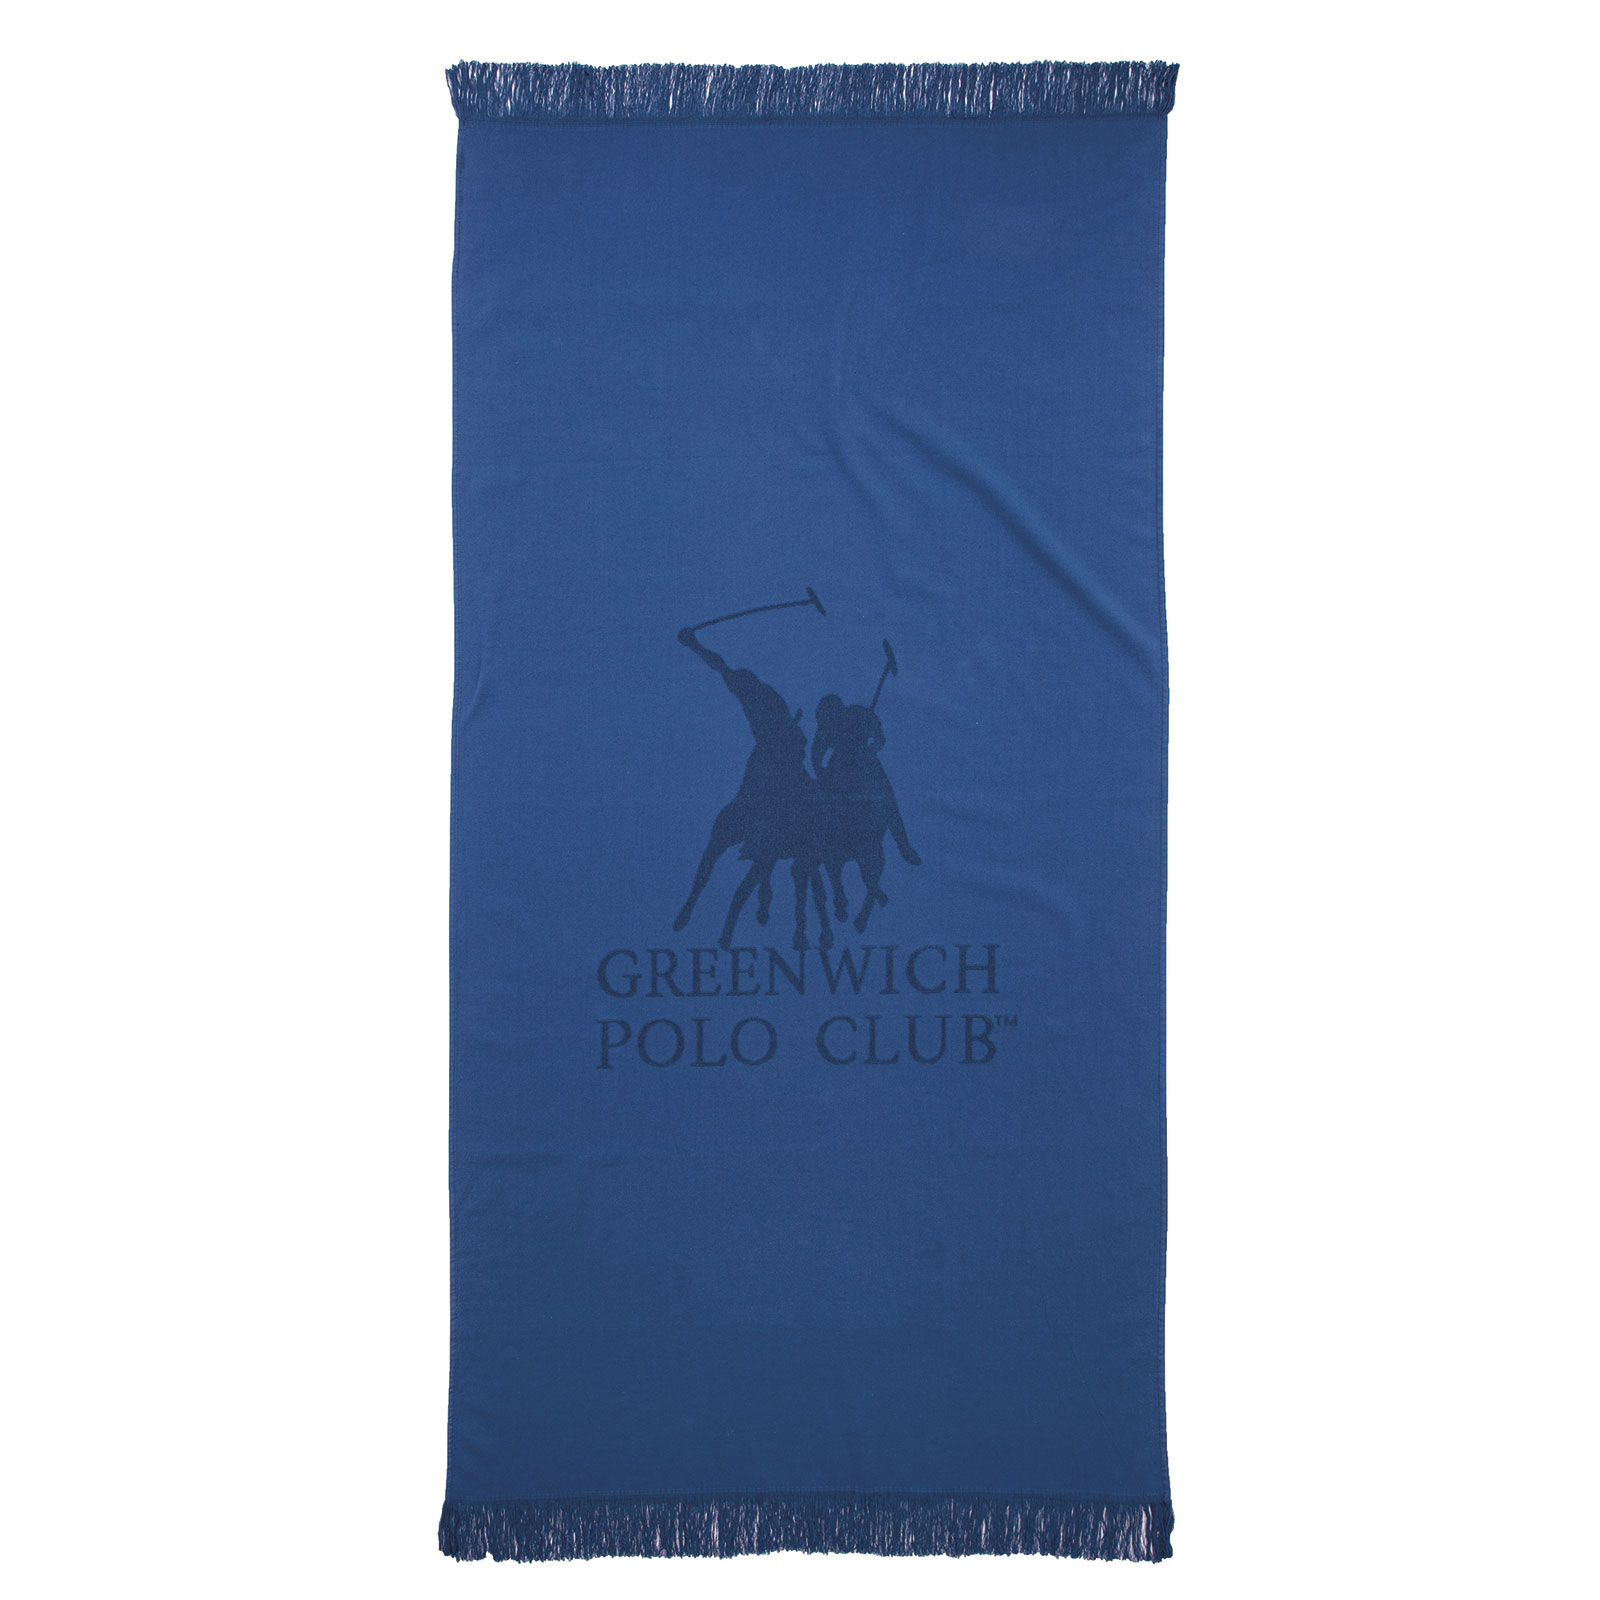 Πετσέτα Θαλάσσης Βαμβακερή 80×170εκ. Essential 3779 Μπλε Σκούρο Greenwich Polo Club (Ύφασμα: Βαμβάκι 100%, Χρώμα: Μπλε) – Greenwich Polo Club – 267801703779